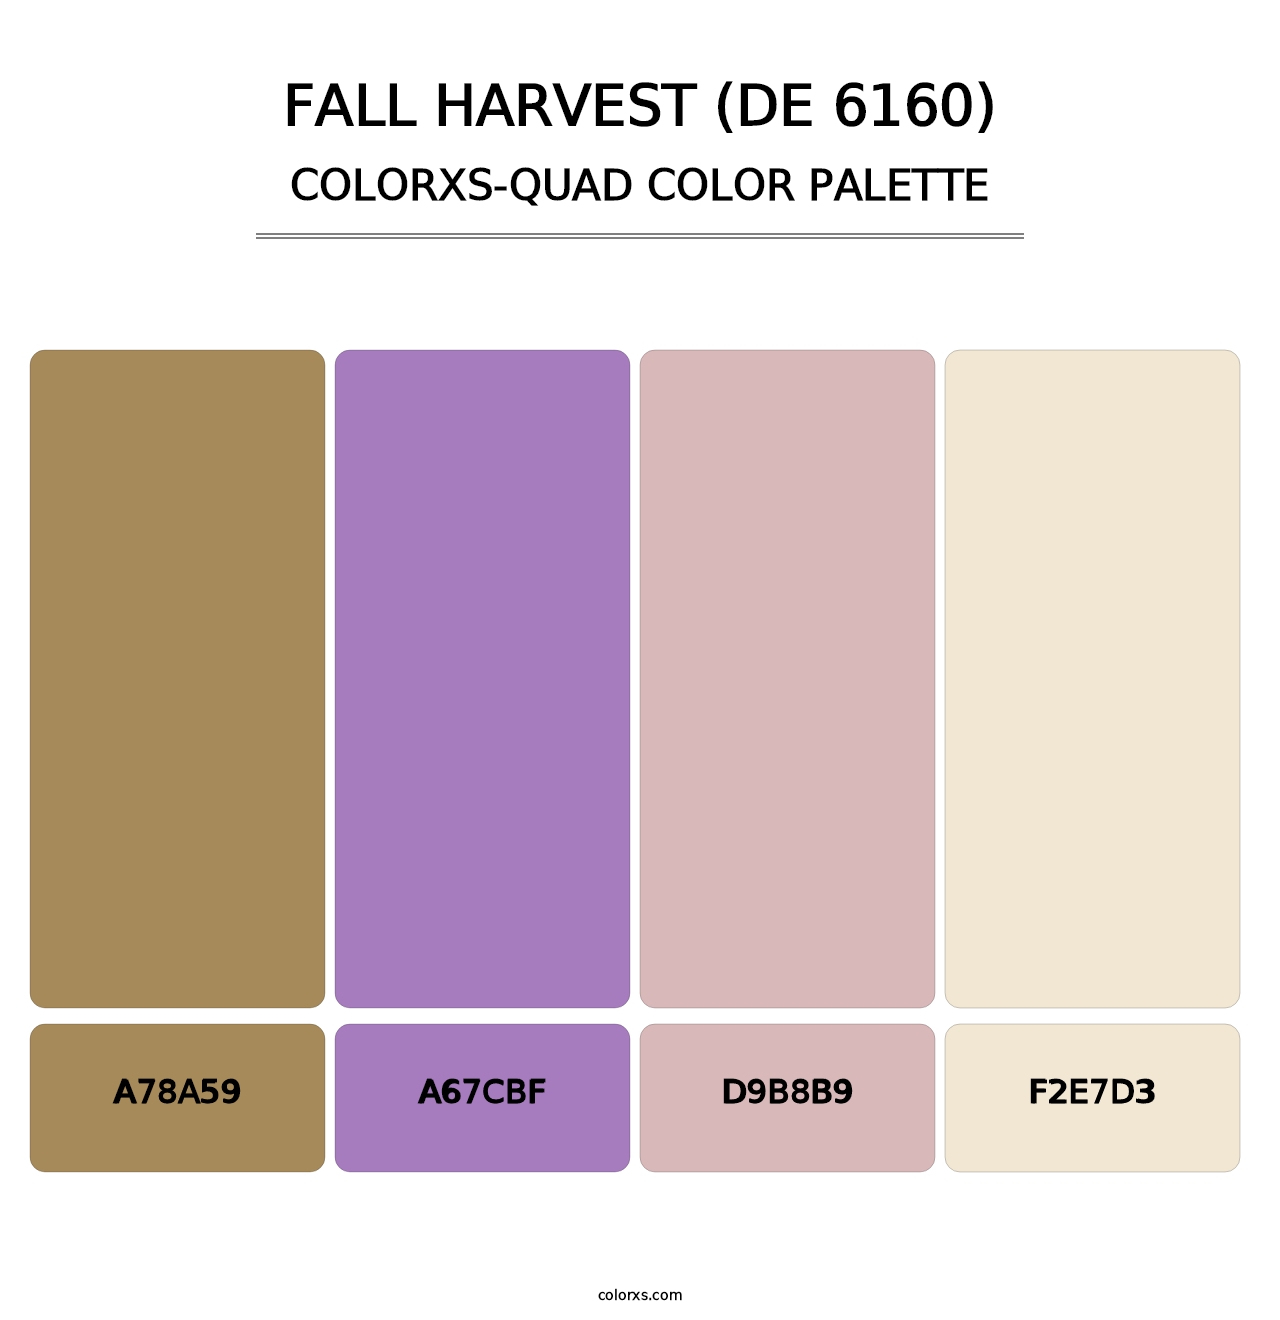 Fall Harvest (DE 6160) - Colorxs Quad Palette